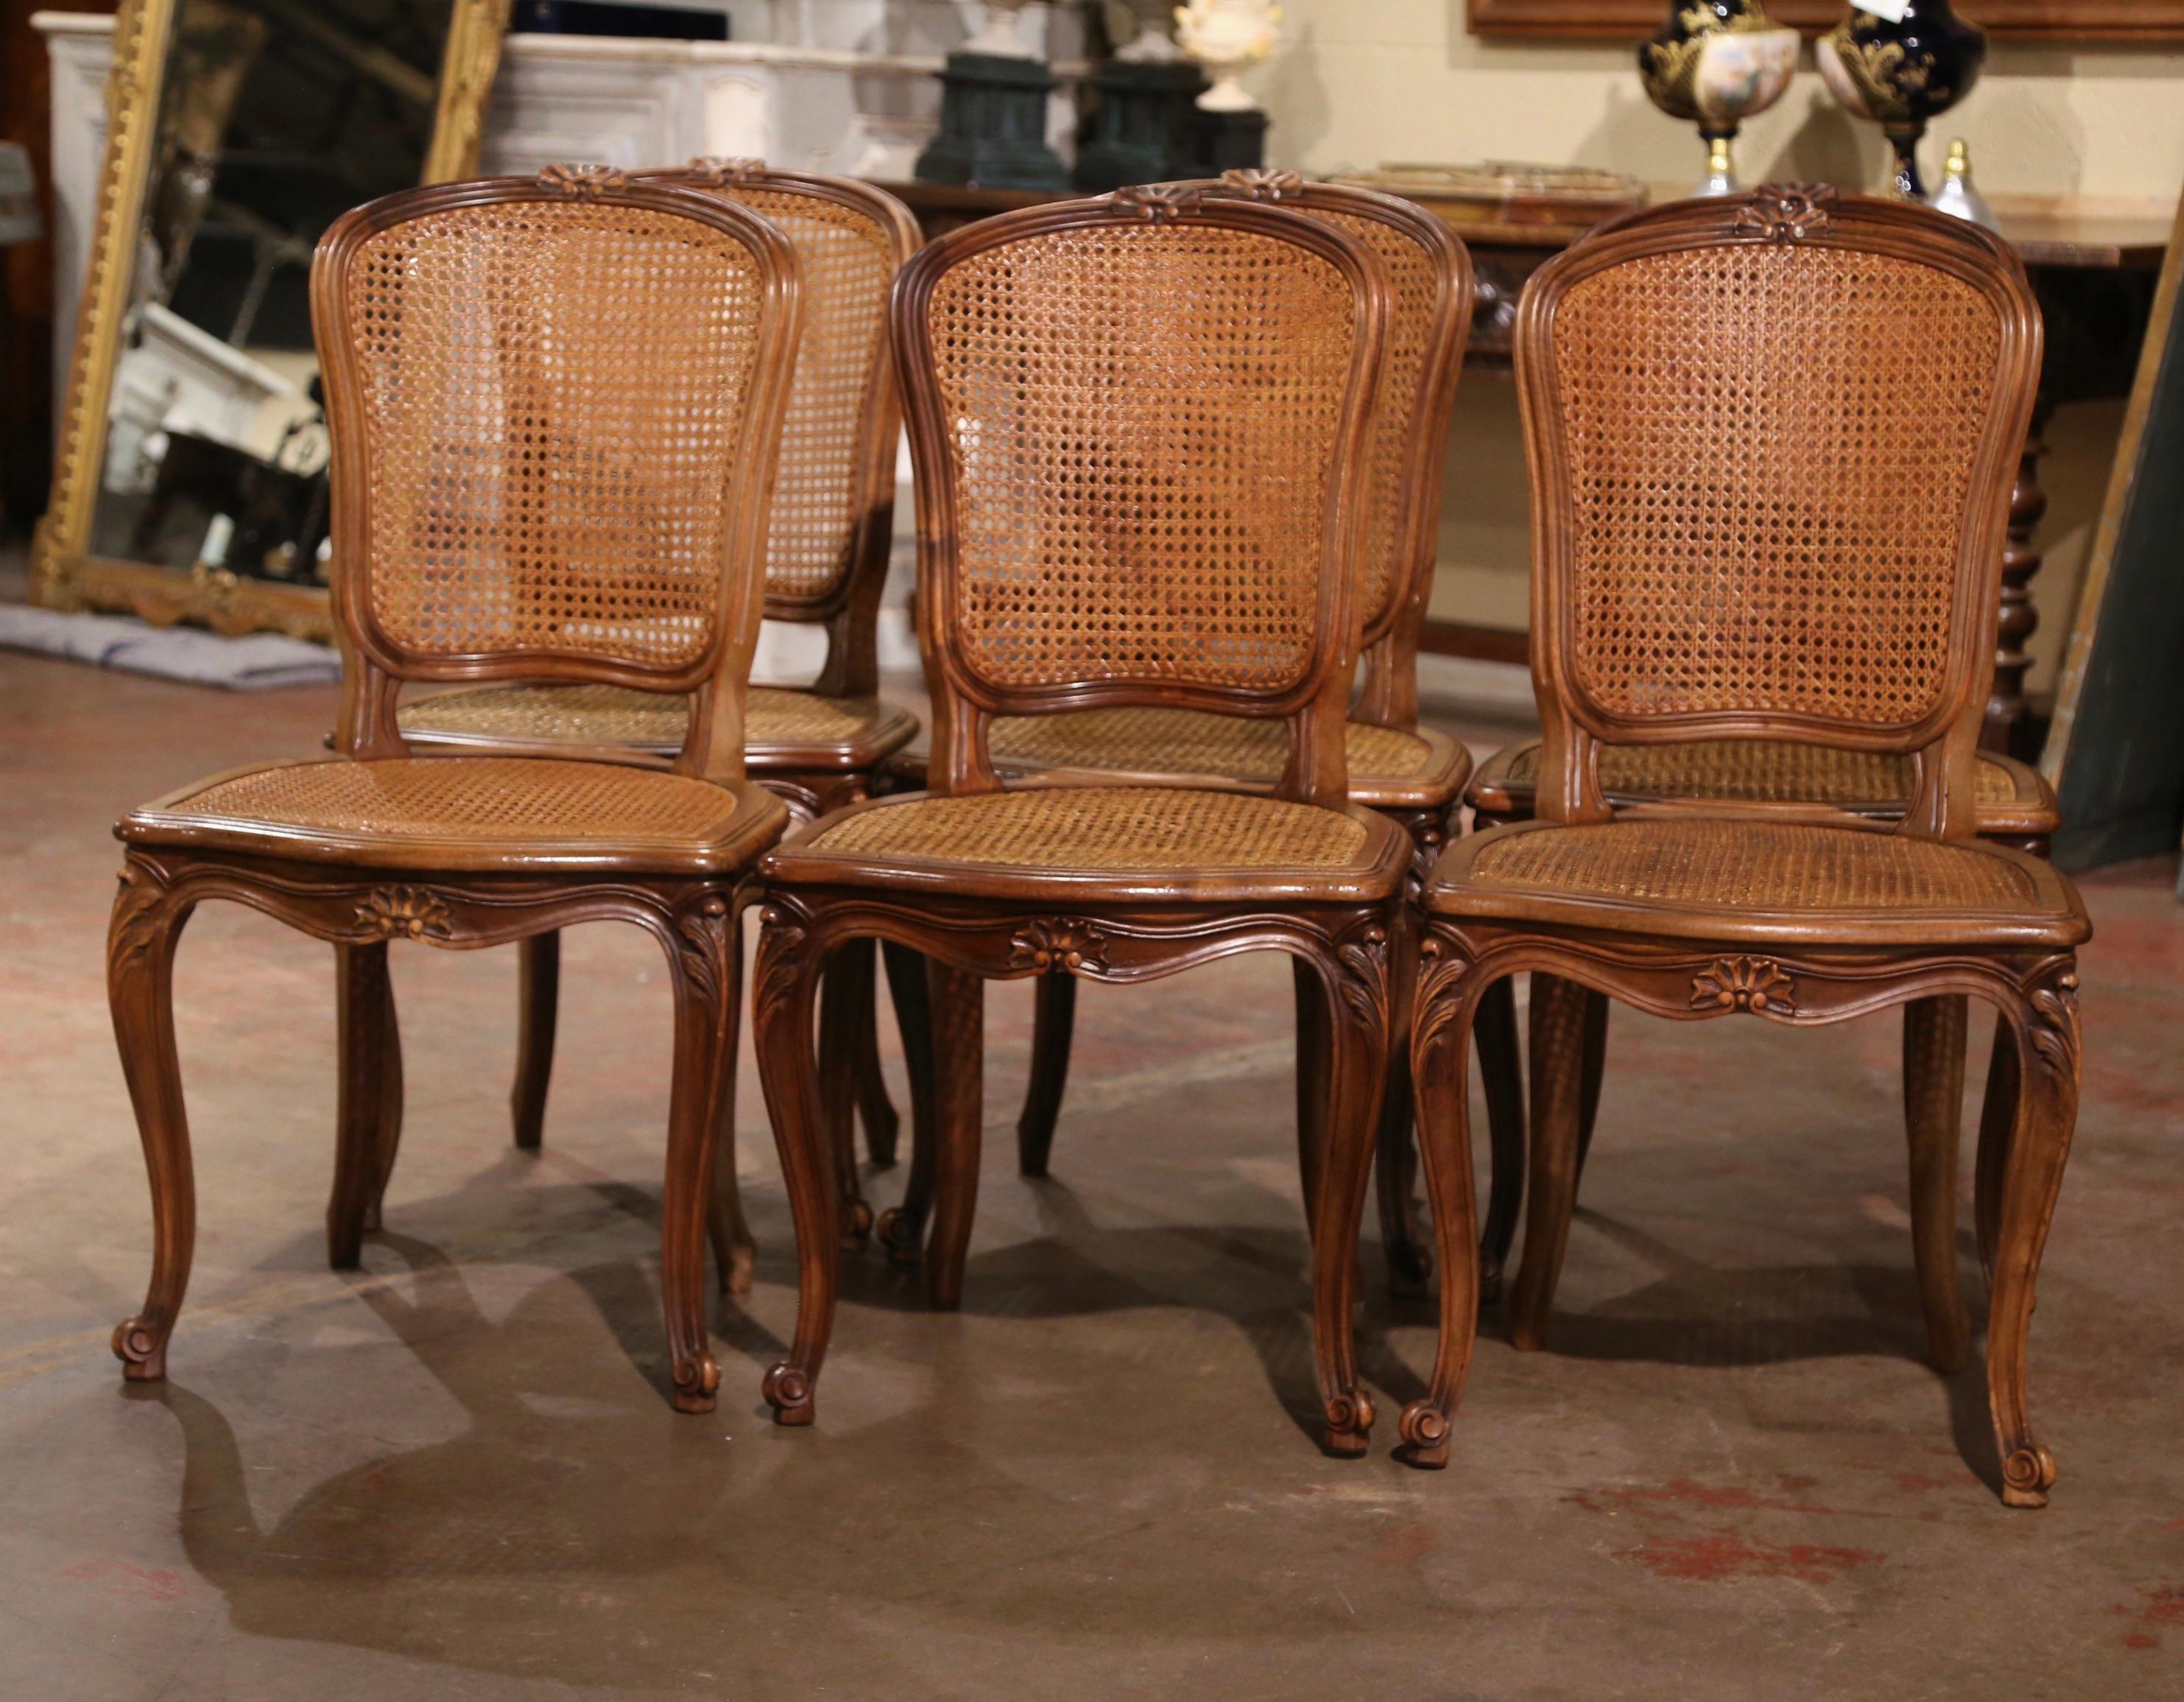 Dekorieren Sie einen Esstisch mit dieser eleganten Reihe antiker Beistellstühle. Die um 1970 in Frankreich gefertigten Esszimmerstühle aus Nussbaumholz stehen auf Cabriole-Beinen, die an der Schulter mit Akanthusblättern verziert sind und in